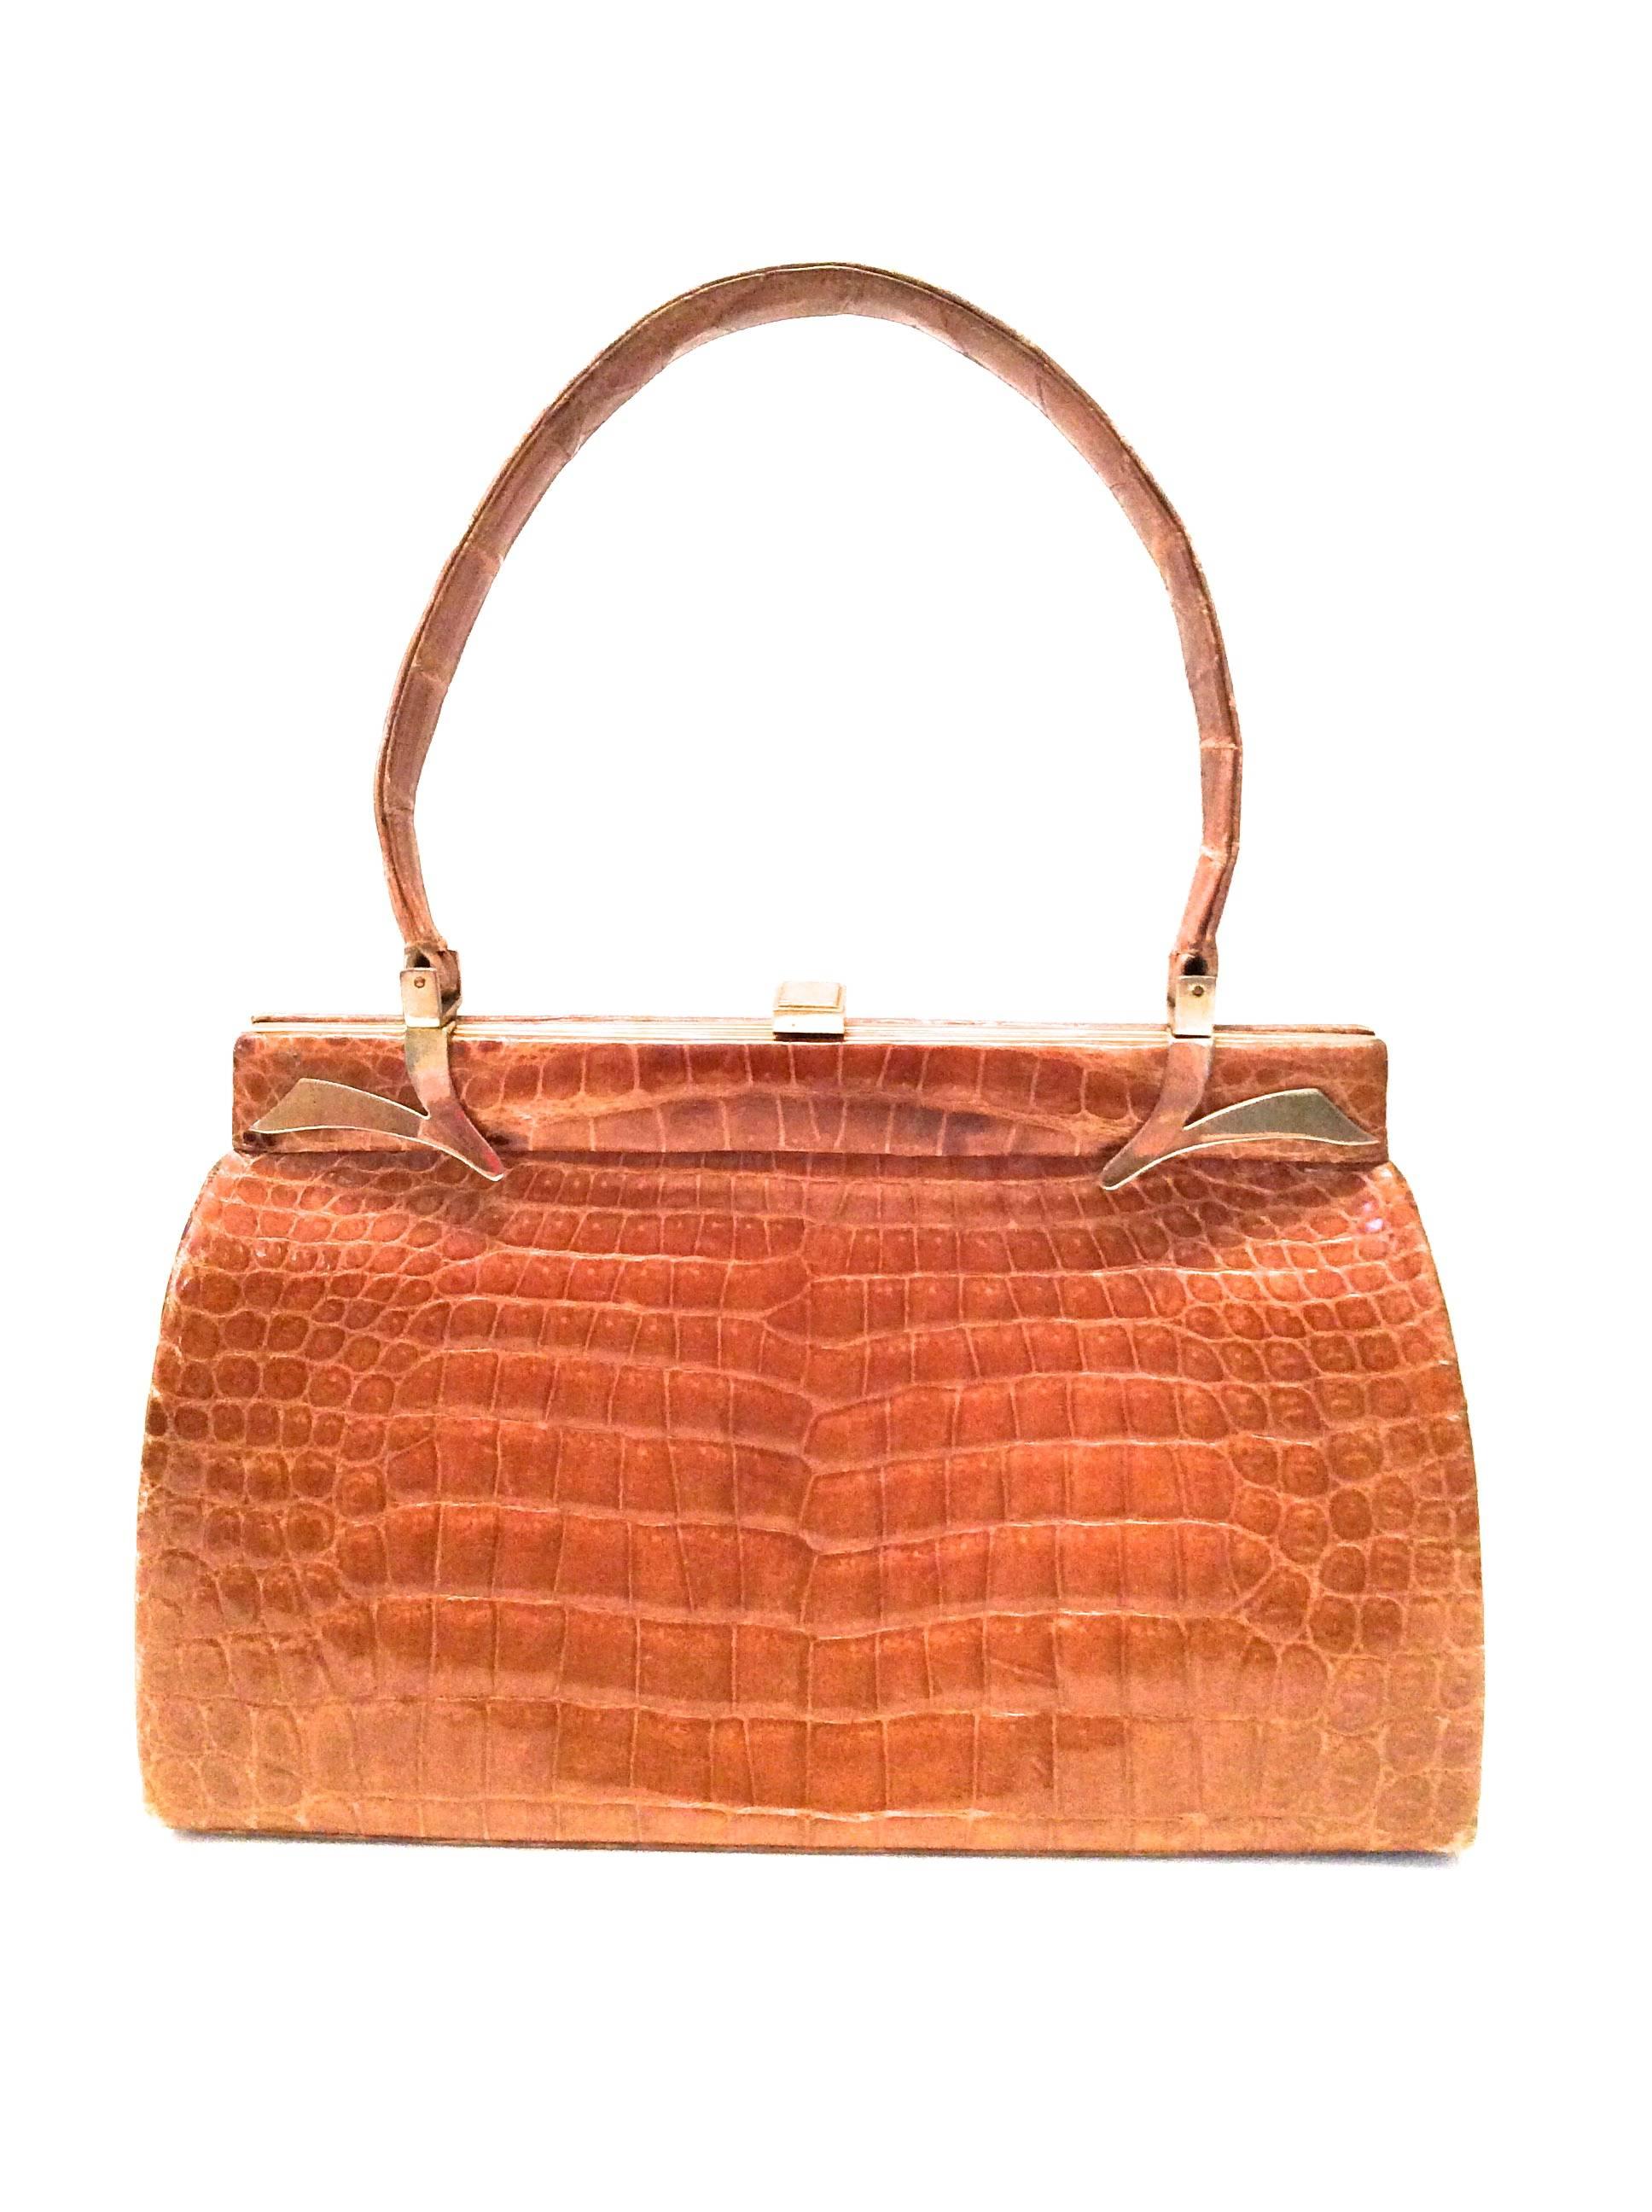 Magnificent Vintage Alligator Handbag - Tan / Light Brown For Sale 3